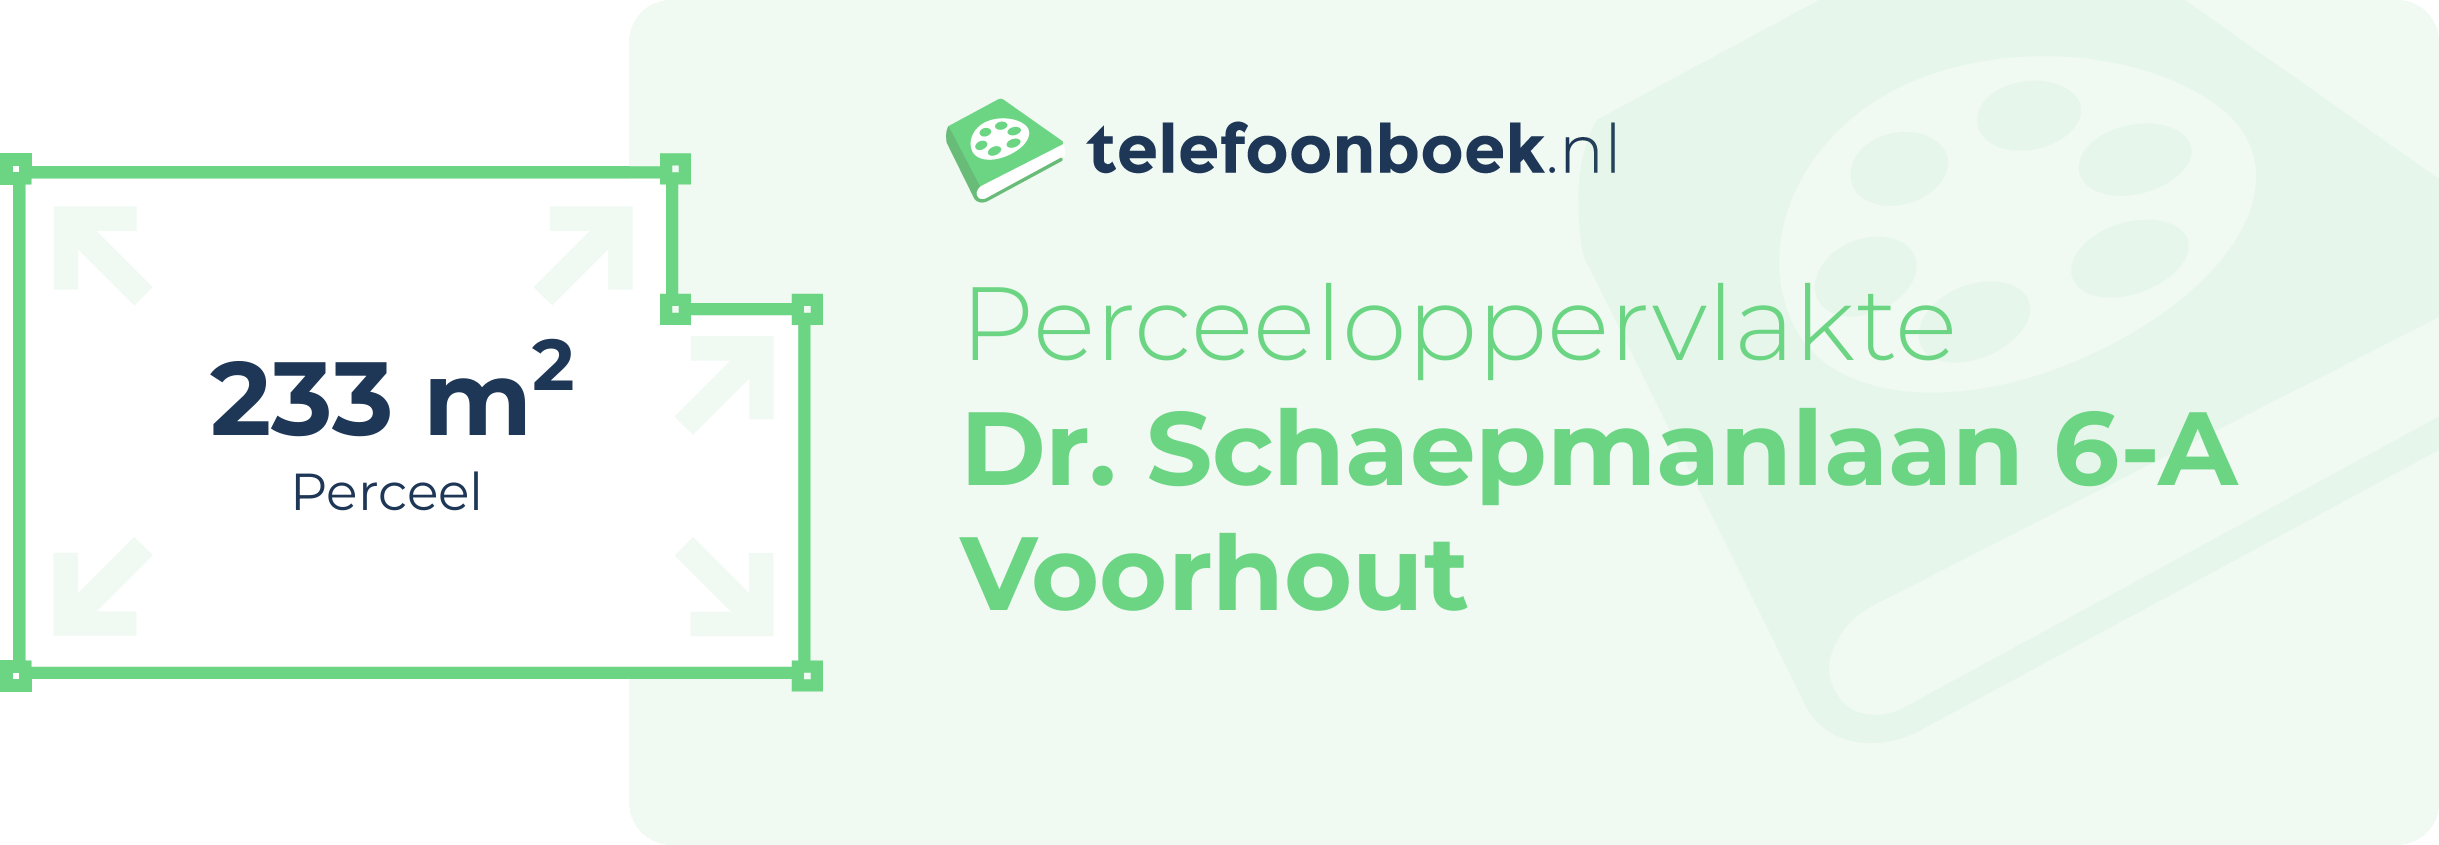 Perceeloppervlakte Dr. Schaepmanlaan 6-A Voorhout